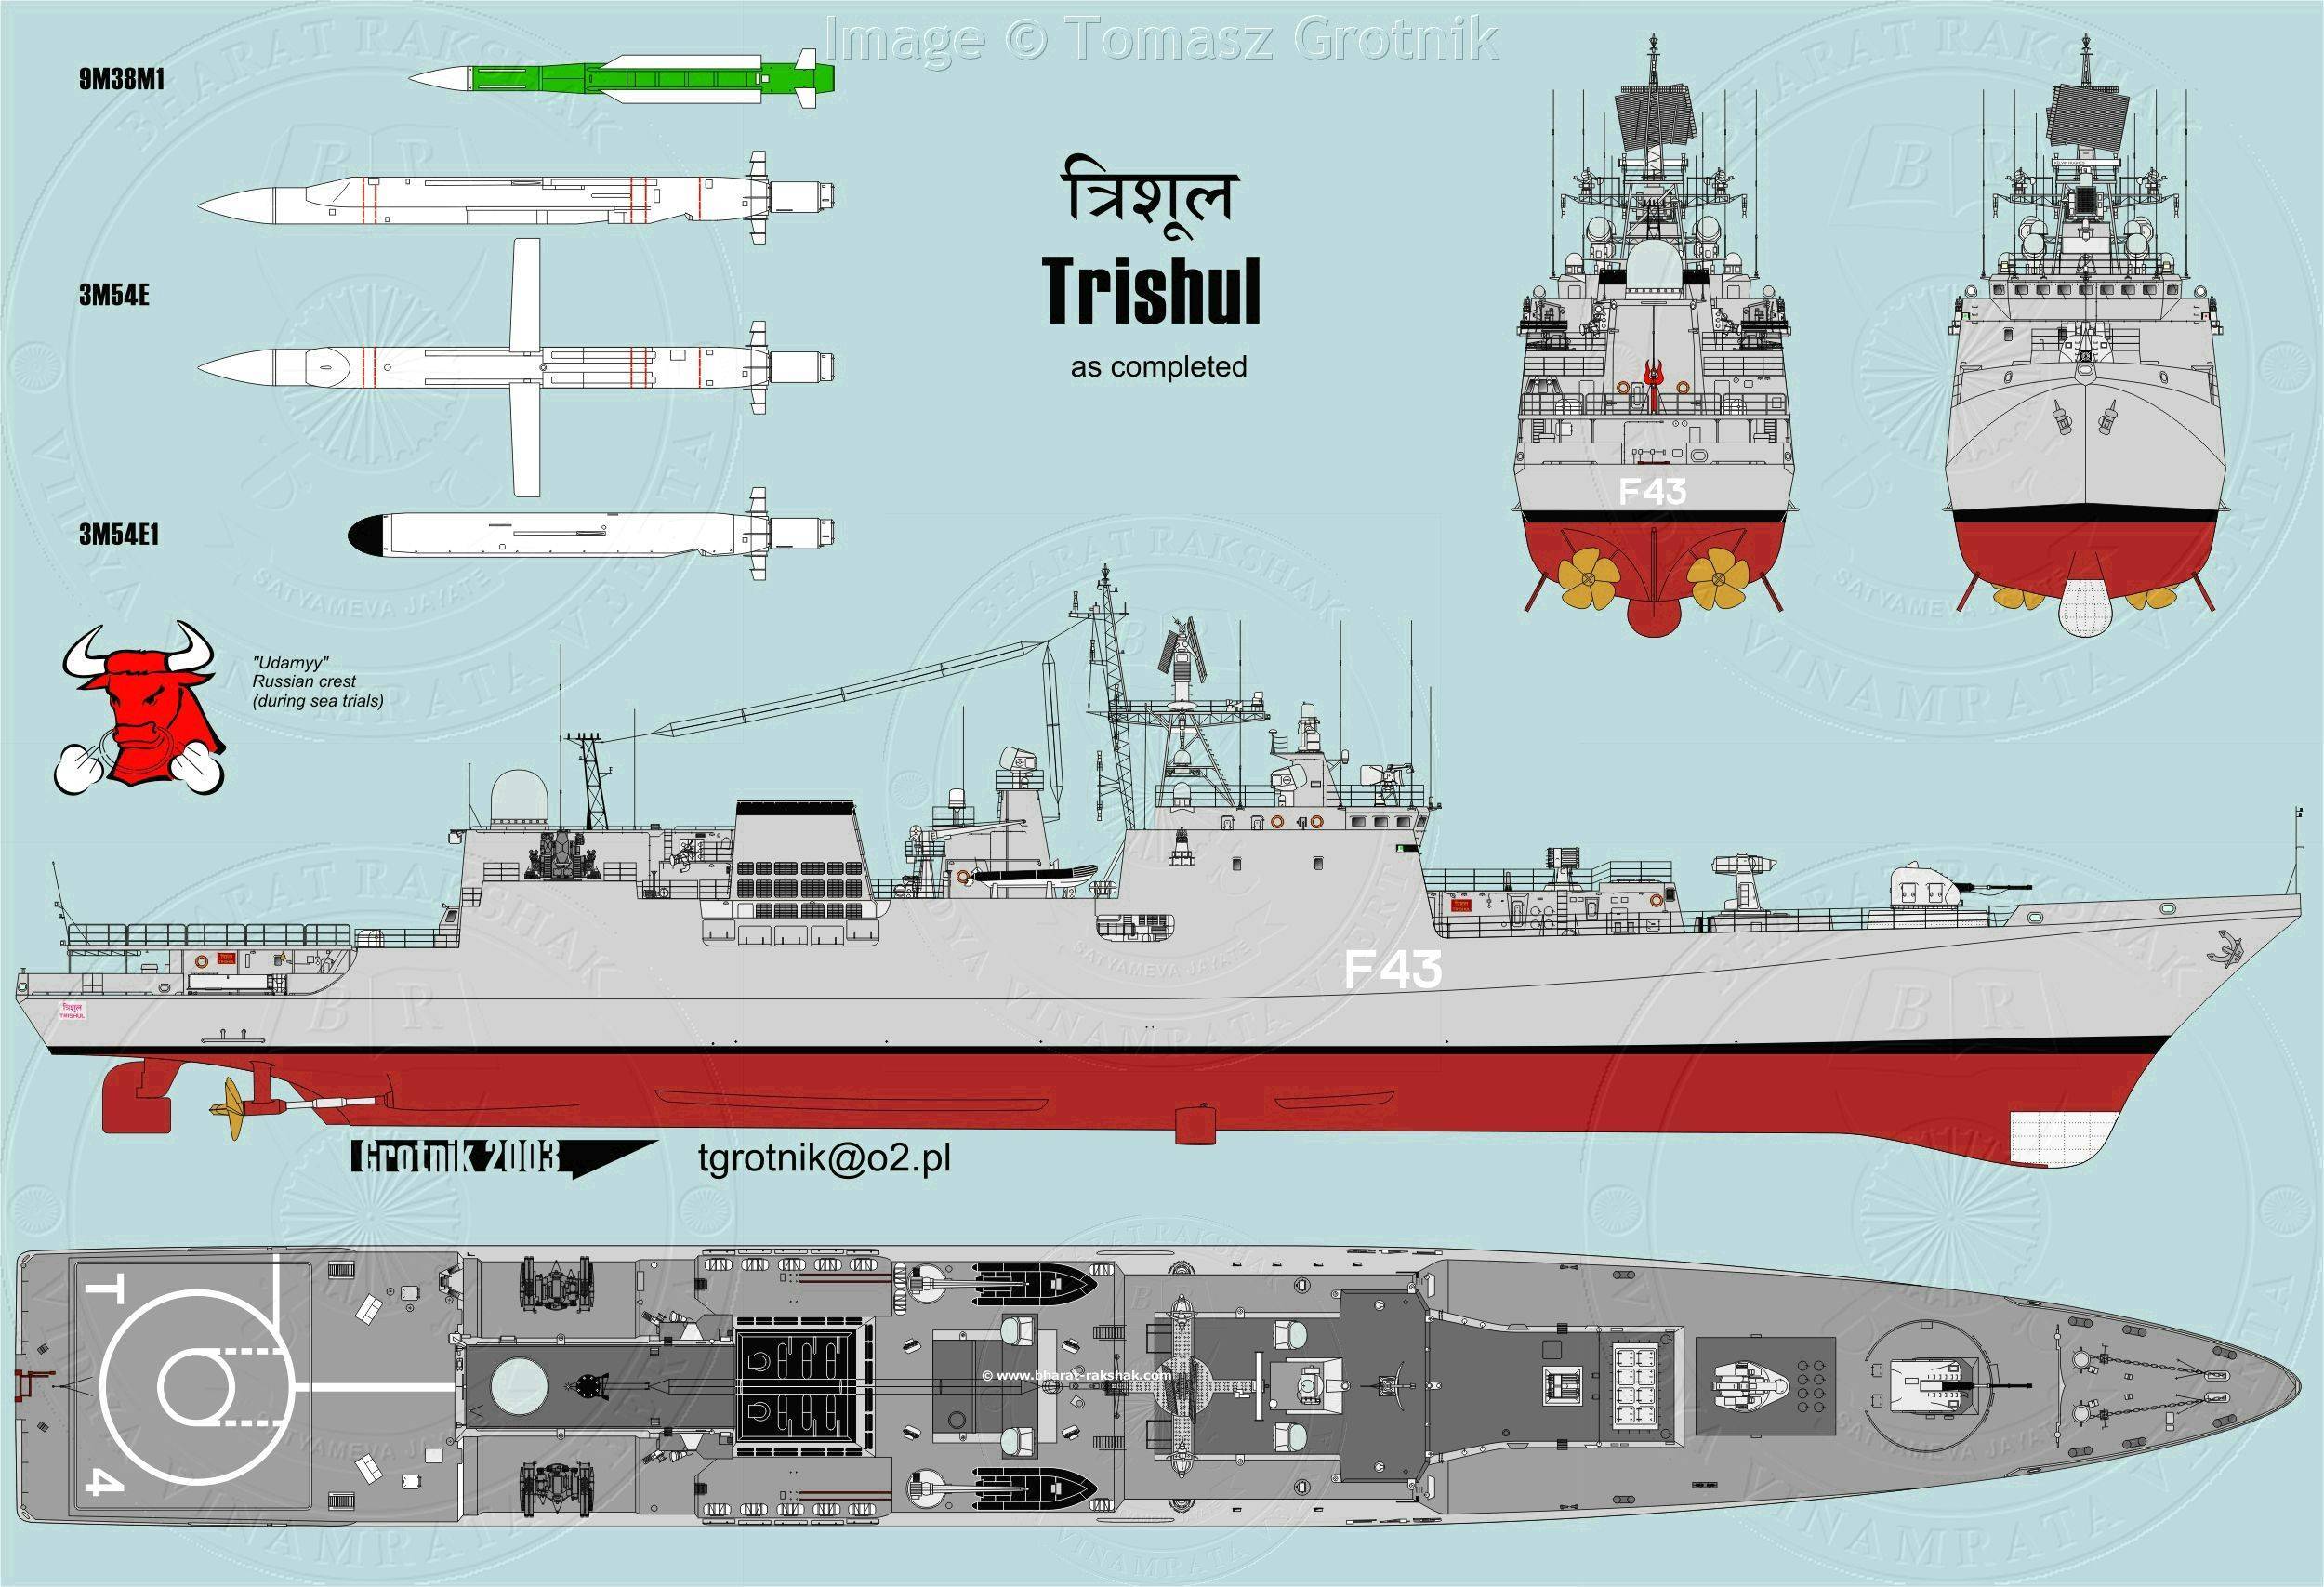 Классификация современных военных кораблей, список, сравнение - корабли и лодки, реки и моря